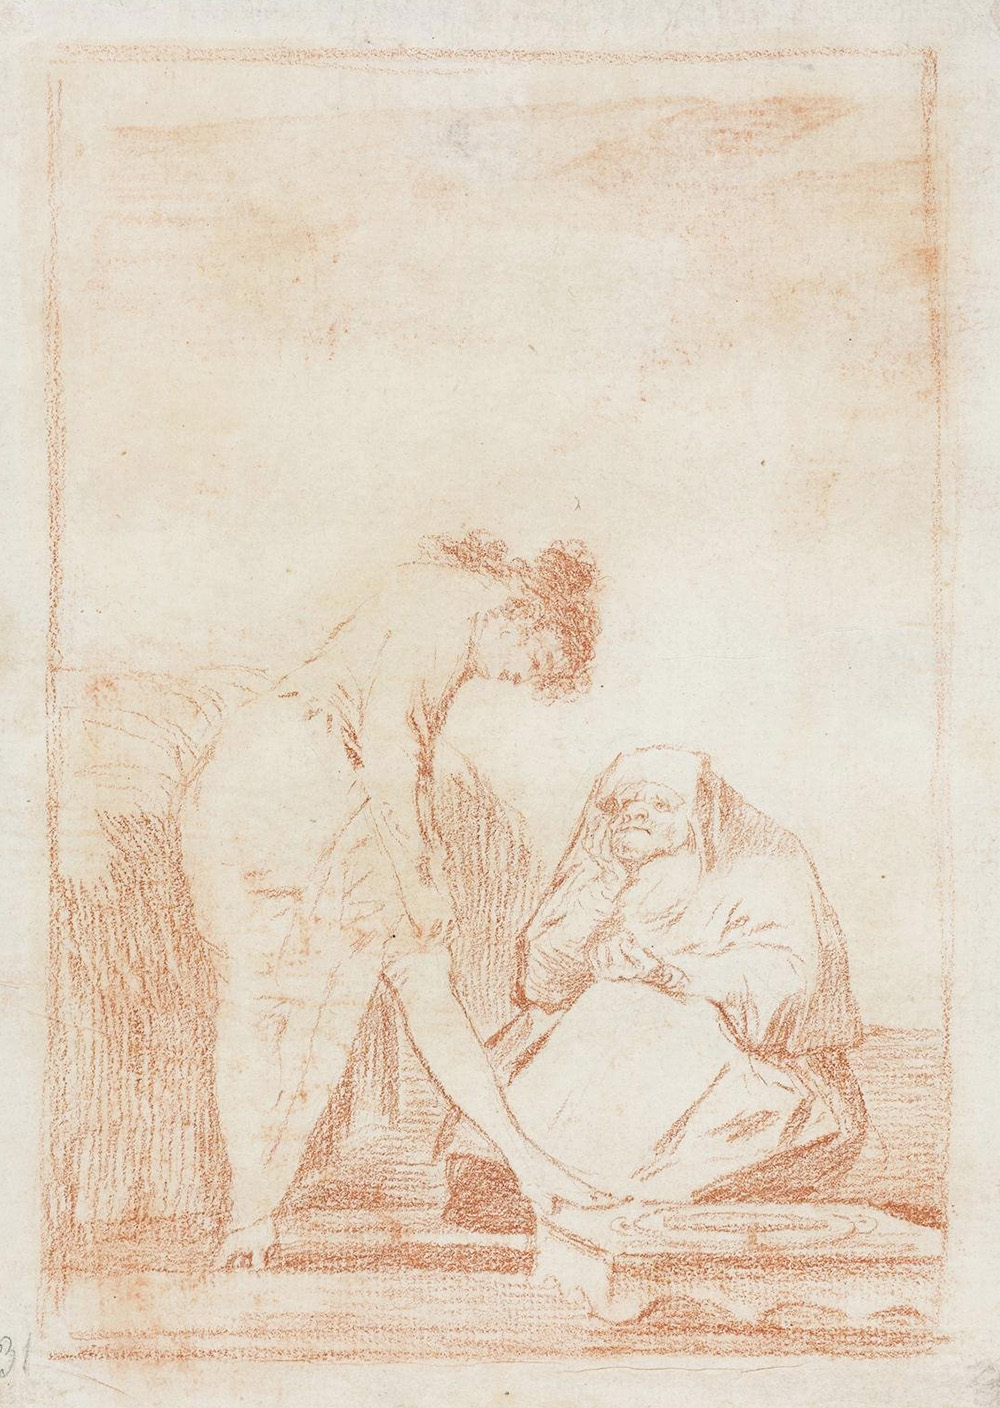 Goya, exposición de Dibujos en el museo del prado Madrid